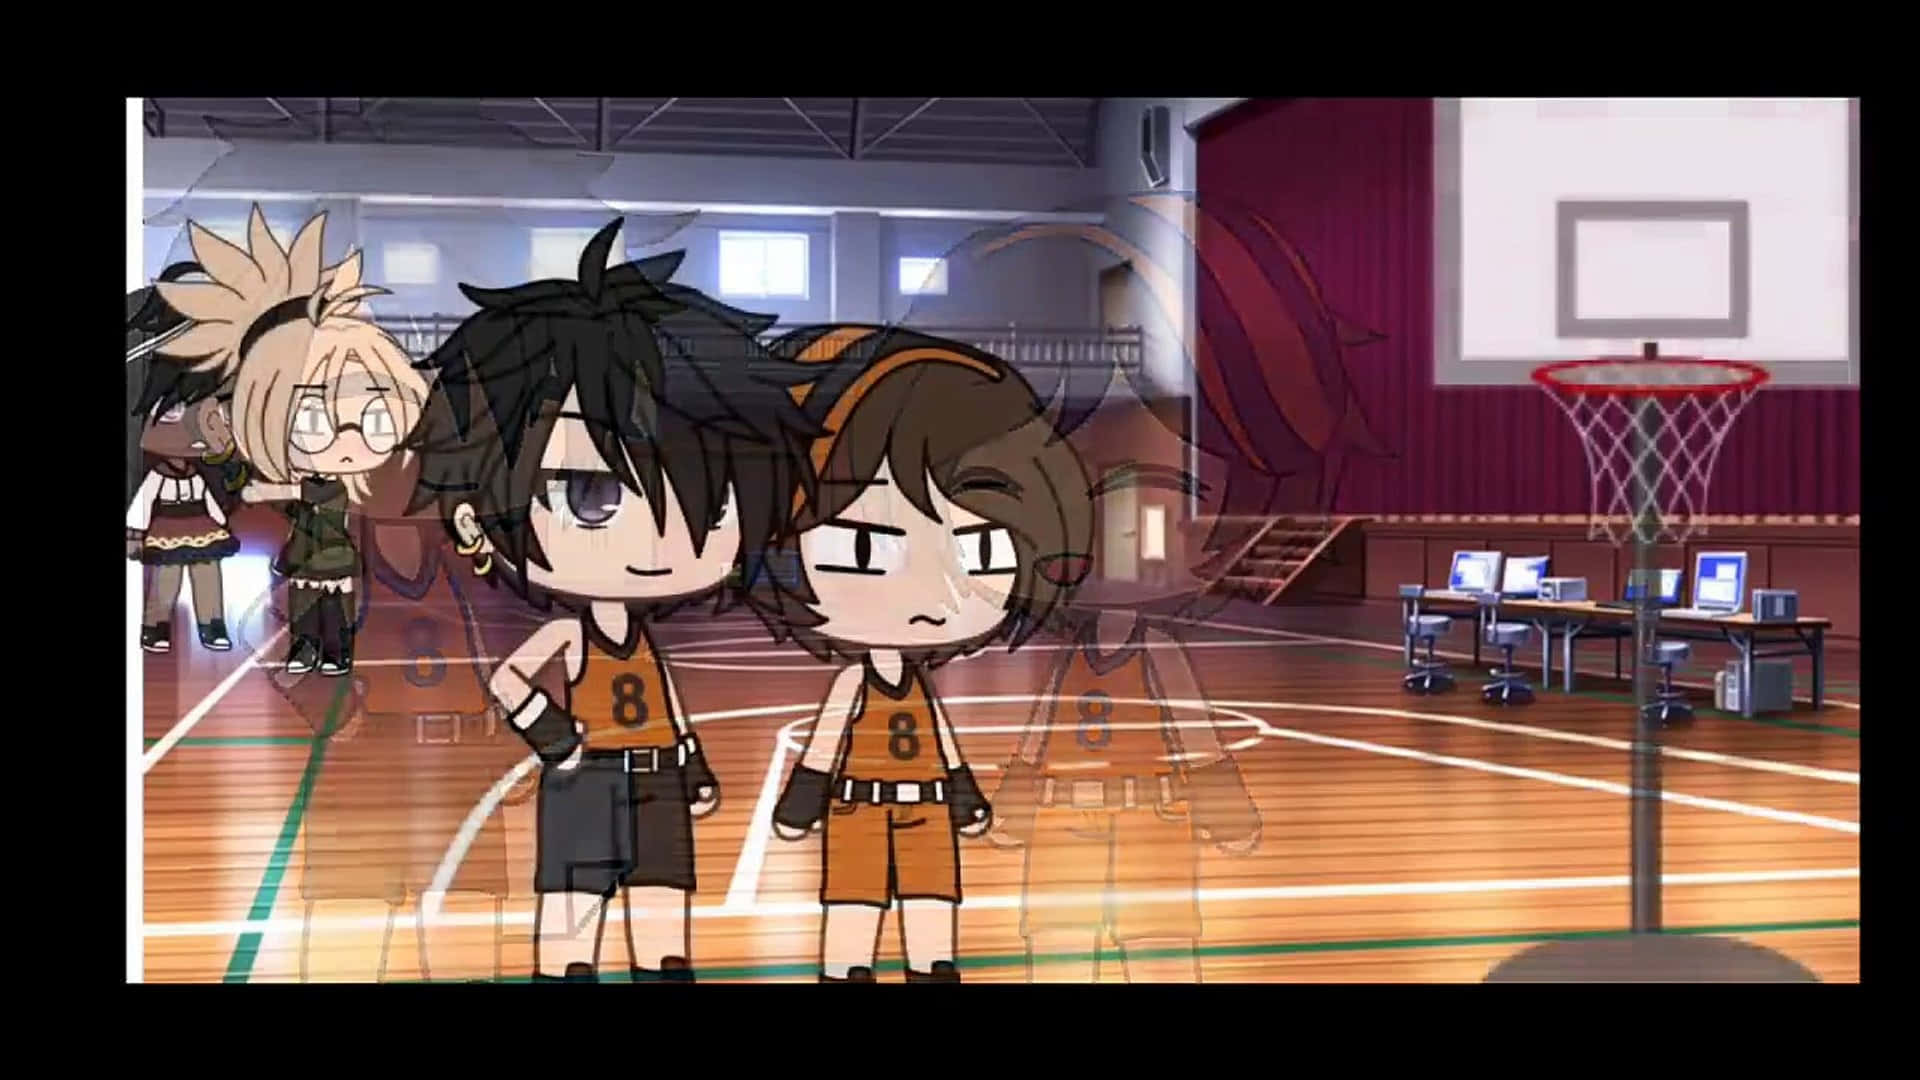 Lexica - 2D Anime style basketball court, anime, strokes